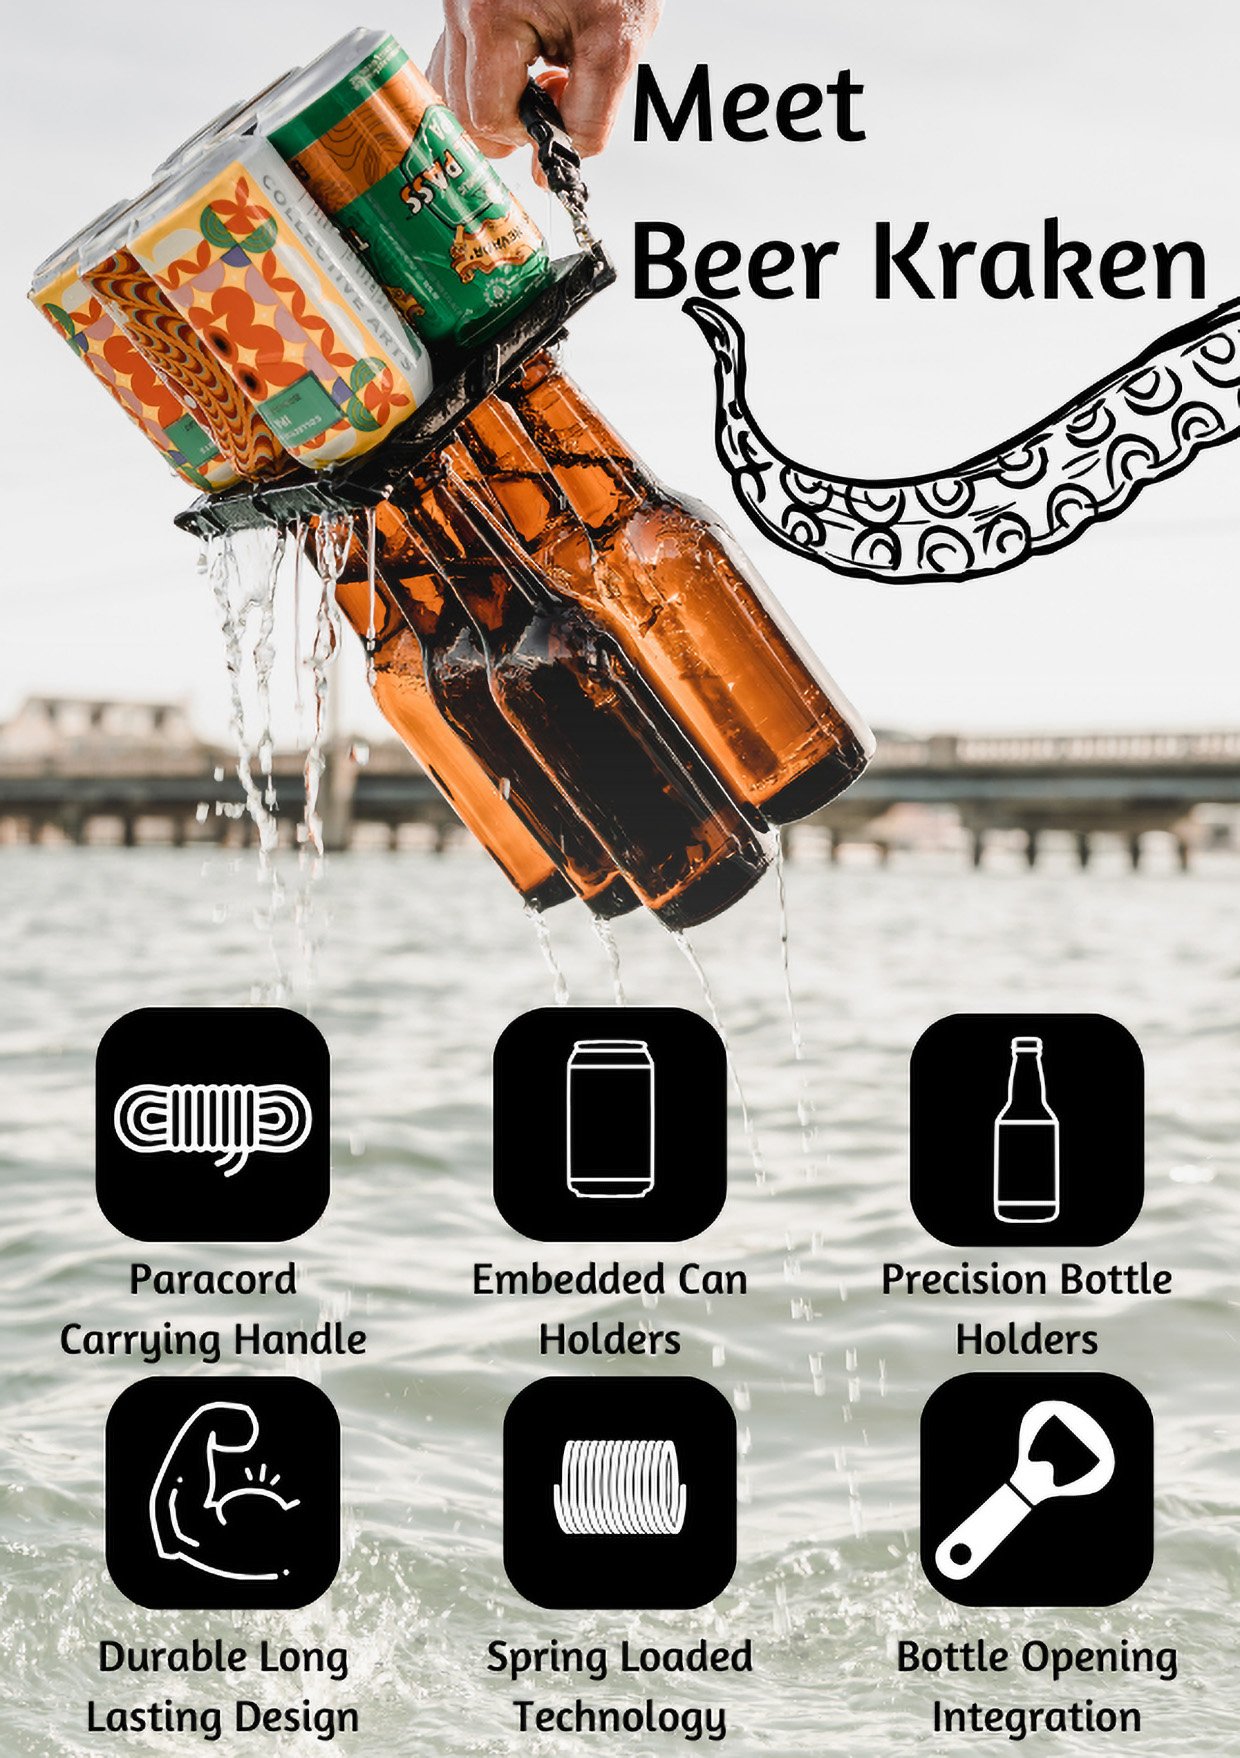 The Beer Kraken Drink Carrier